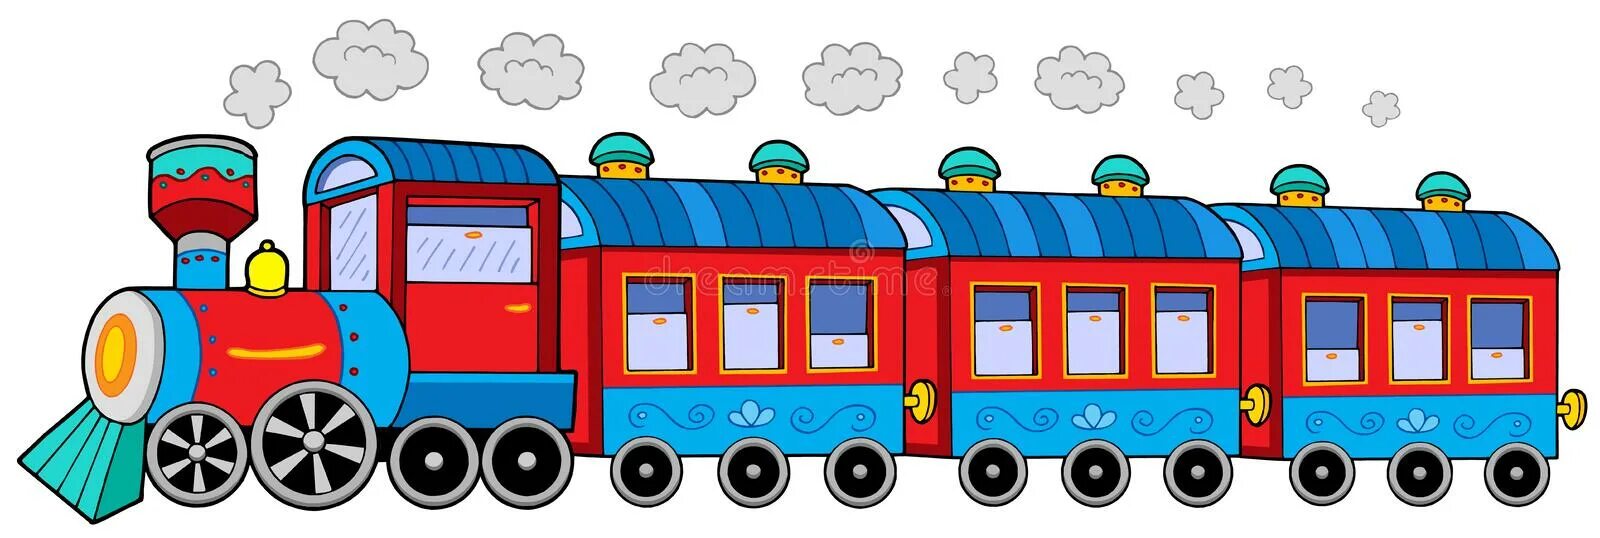 Три математика ехали в разных вагонах. Поезд для детей в детском саду. Паровоз с вагонами. Поезд с вагонами на белом фоне. Поезд с вагонами для детей.